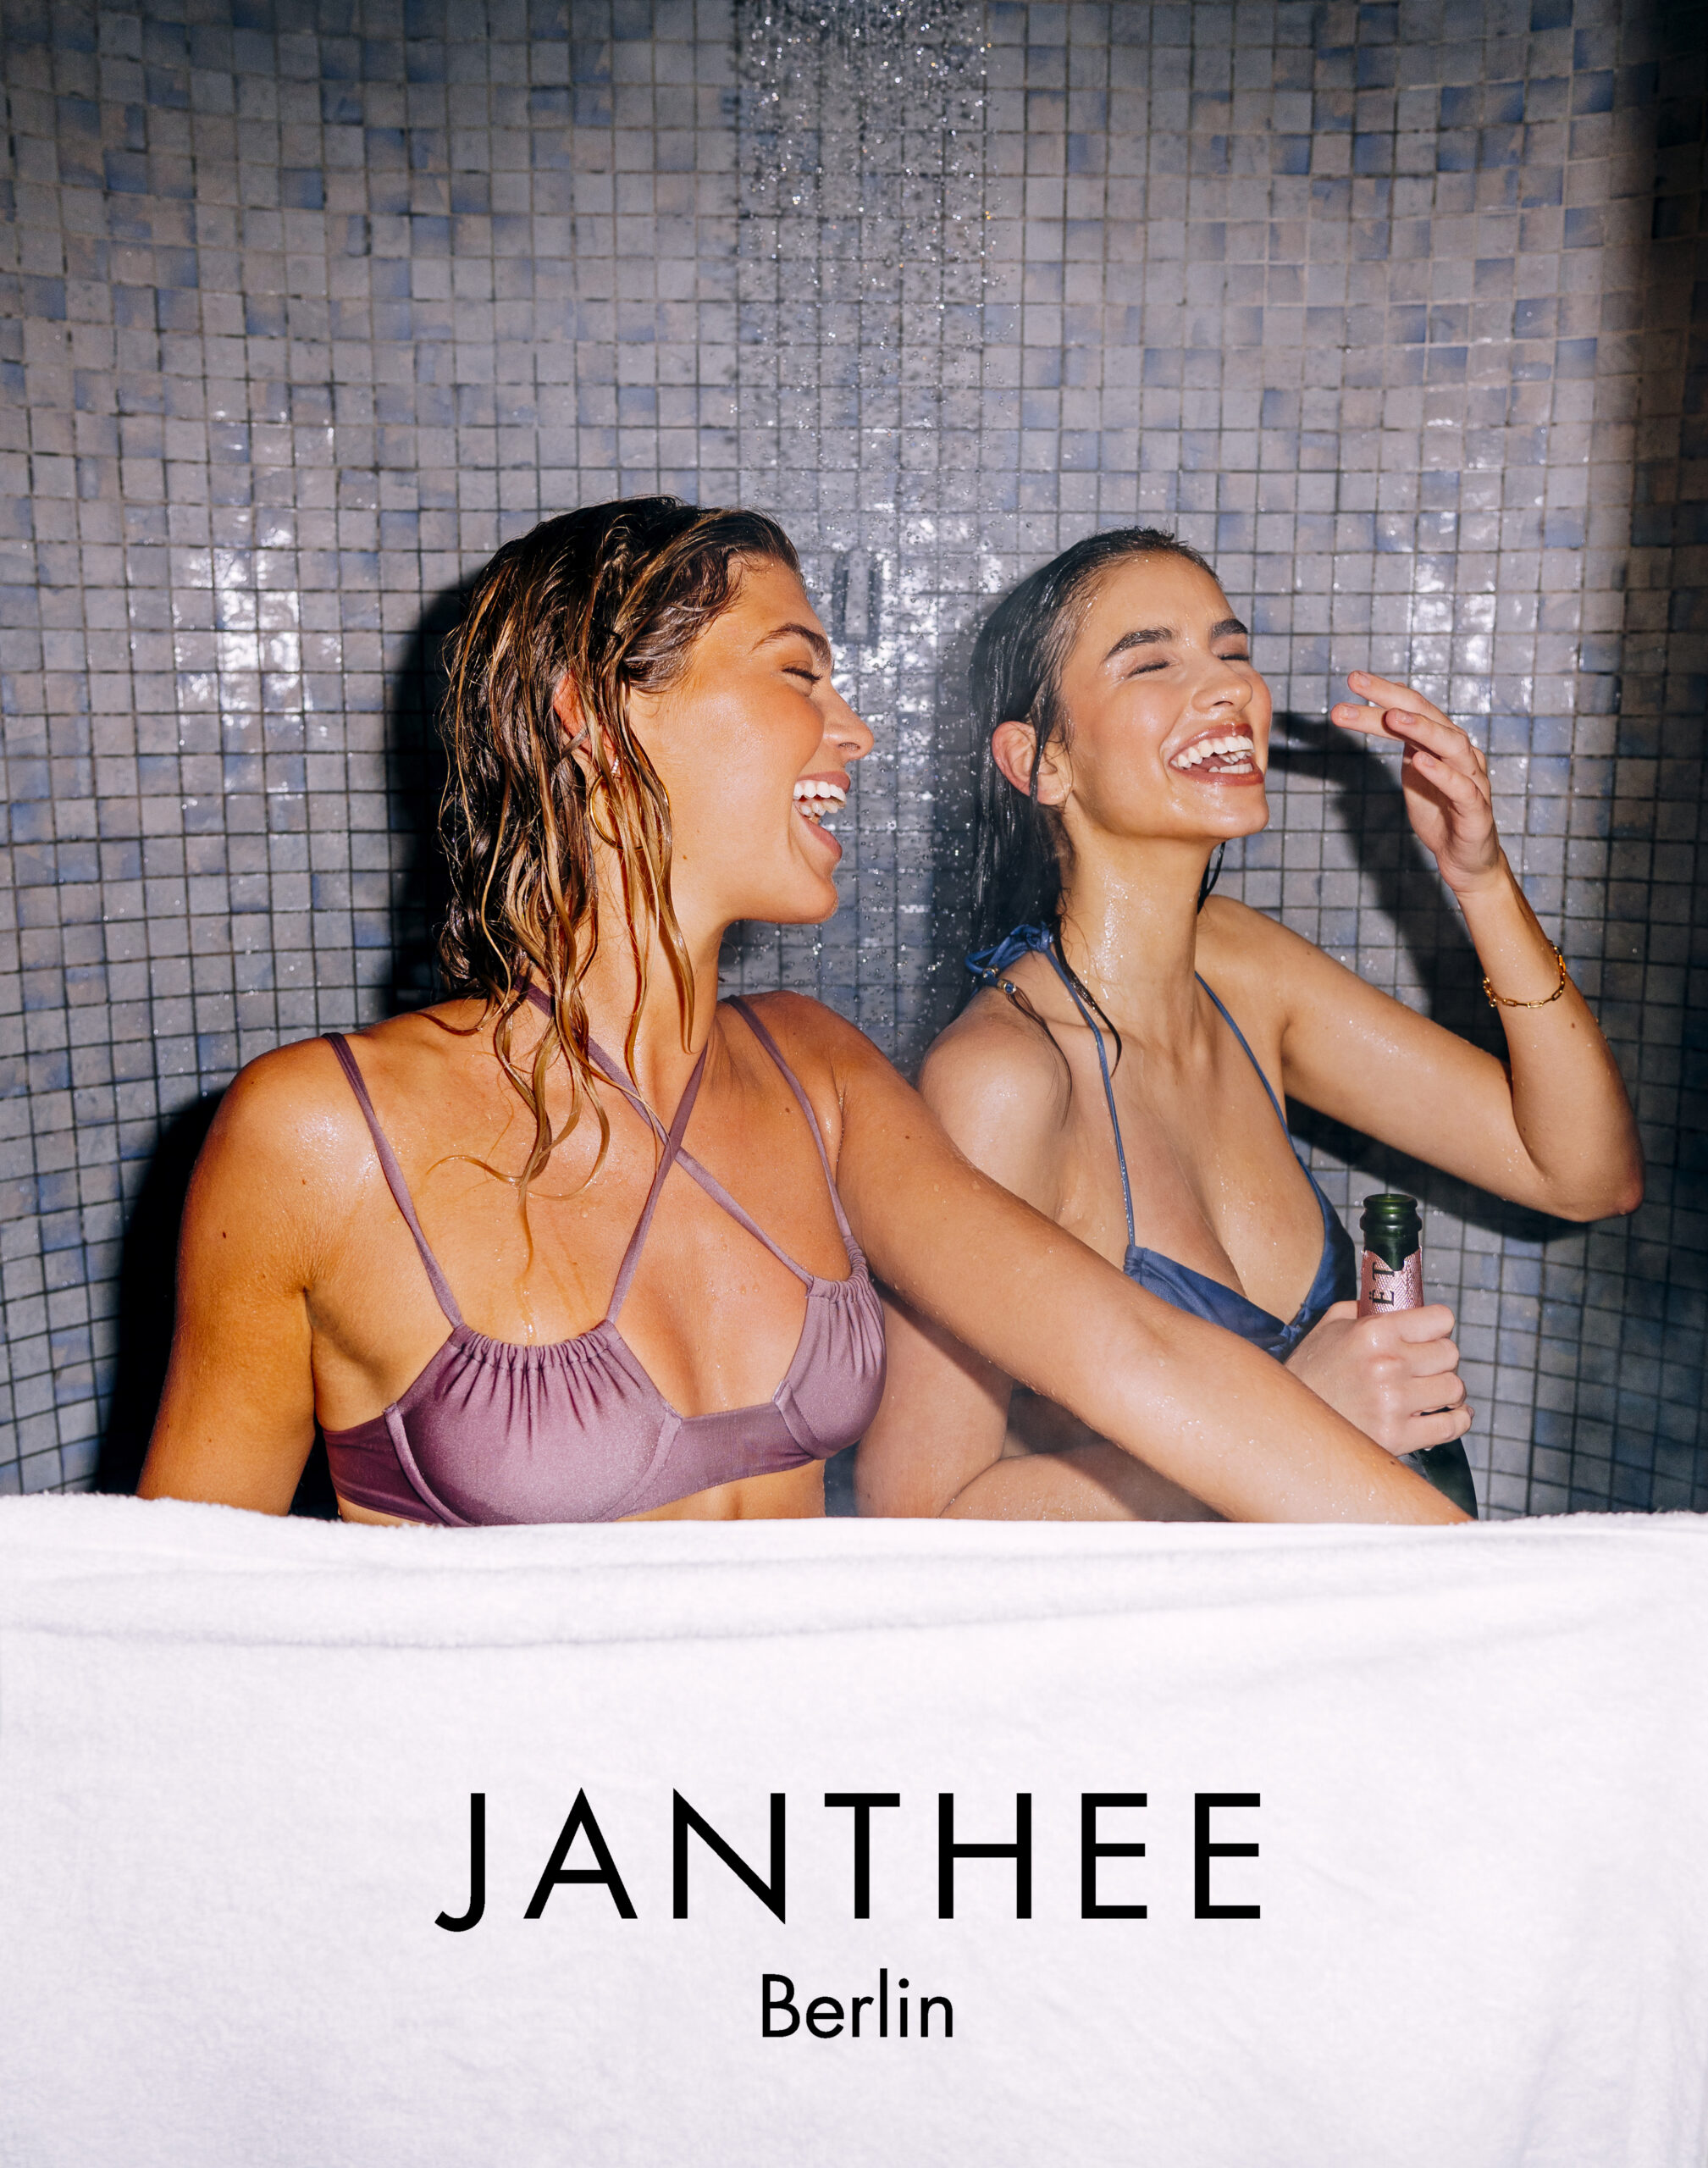 Janthee Berlin Models in der Dusche mit Make up